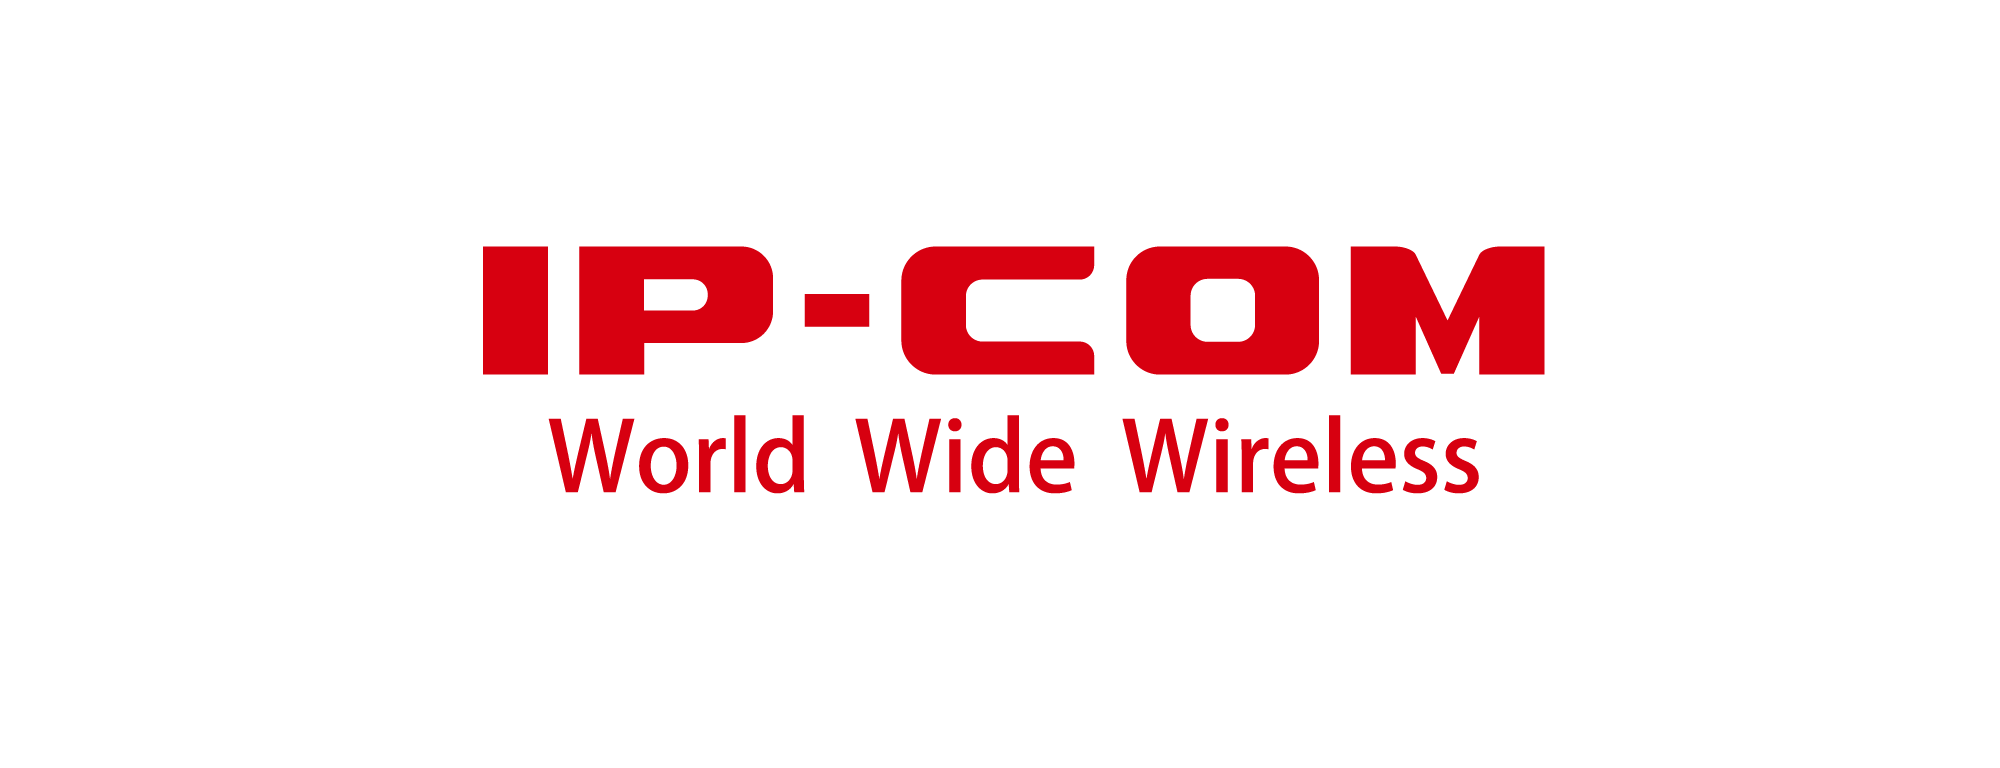 محصولات ipcom